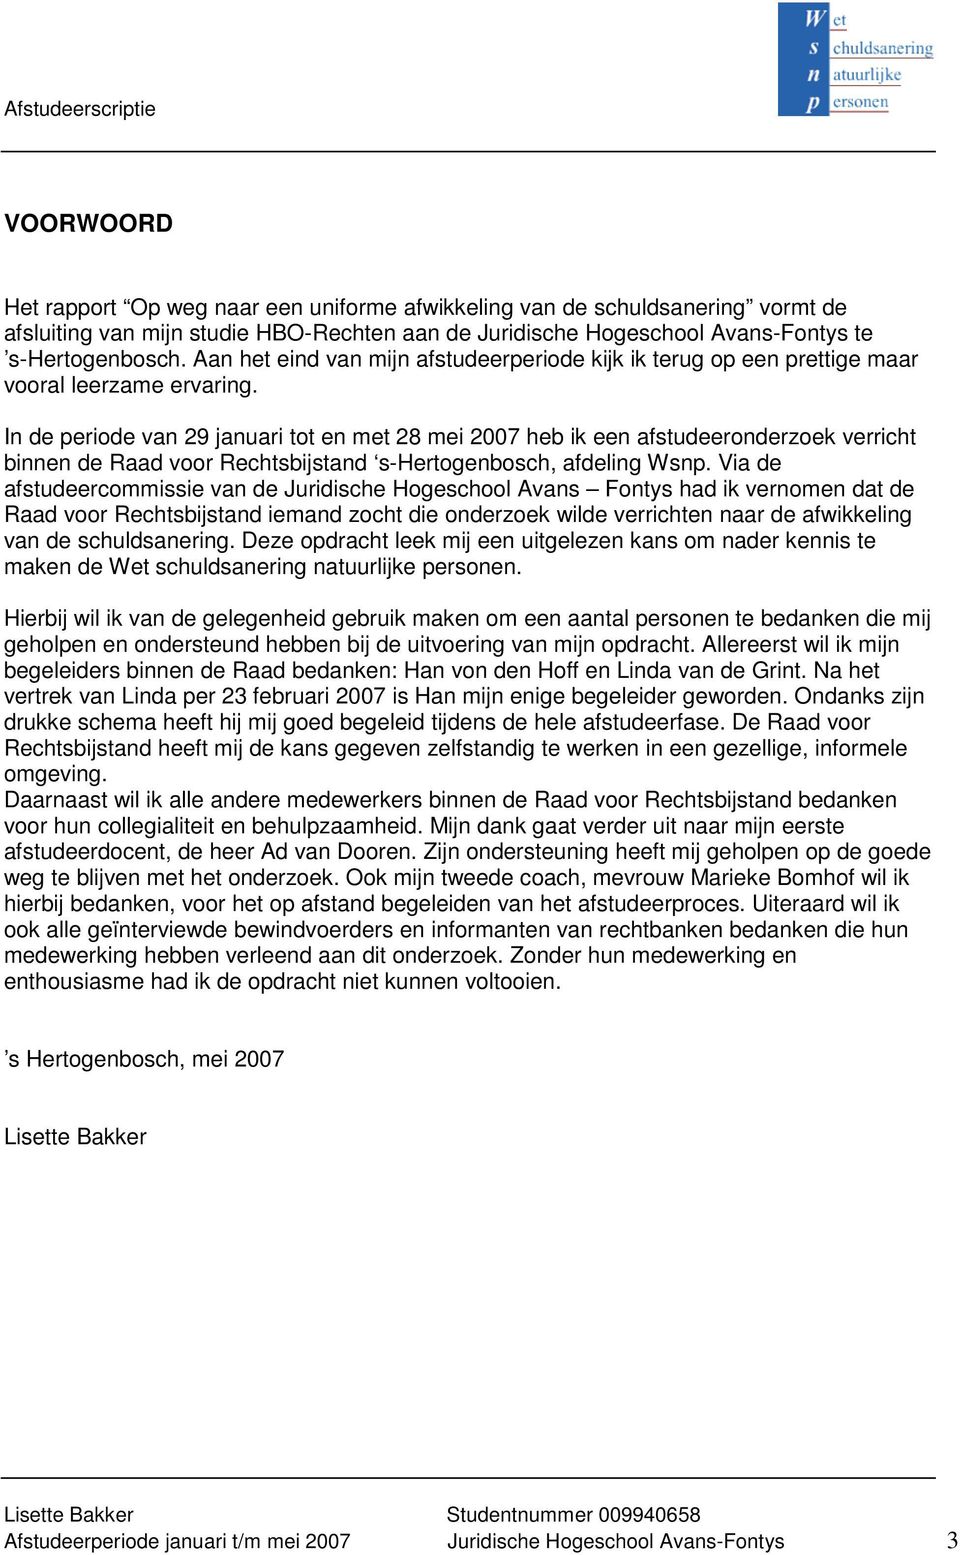 In de periode van 29 januari tot en met 28 mei 2007 heb ik een afstudeeronderzoek verricht binnen de Raad voor Rechtsbijstand s-hertogenbosch, afdeling Wsnp.